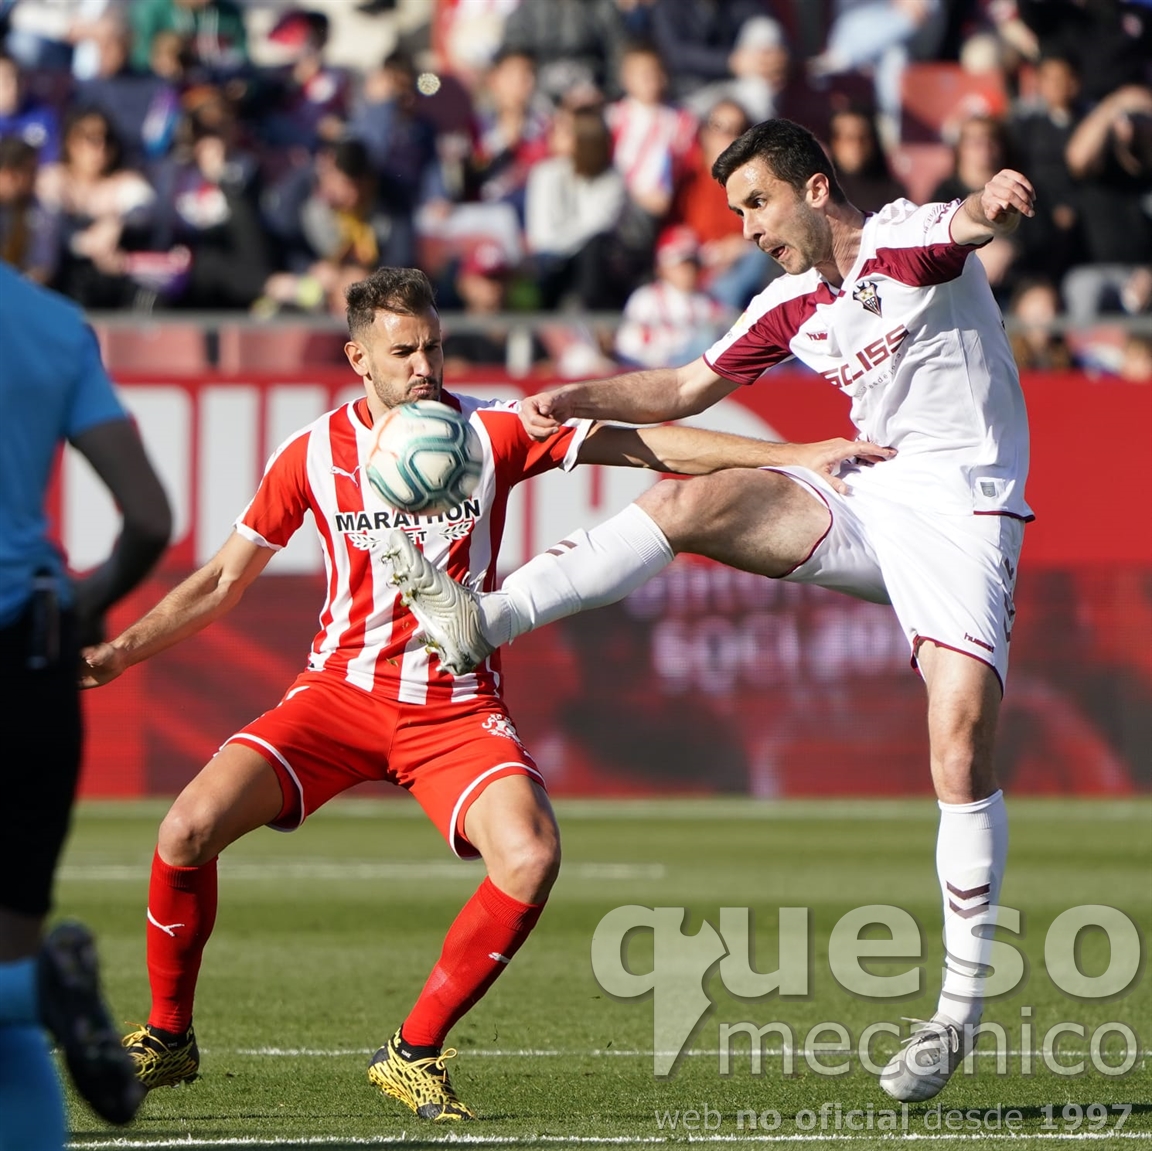 El uruguayo y ex-jugador del Albacete Cristian Stuani fue sometido a un férreo marcaje y apenas si tocó la pelota